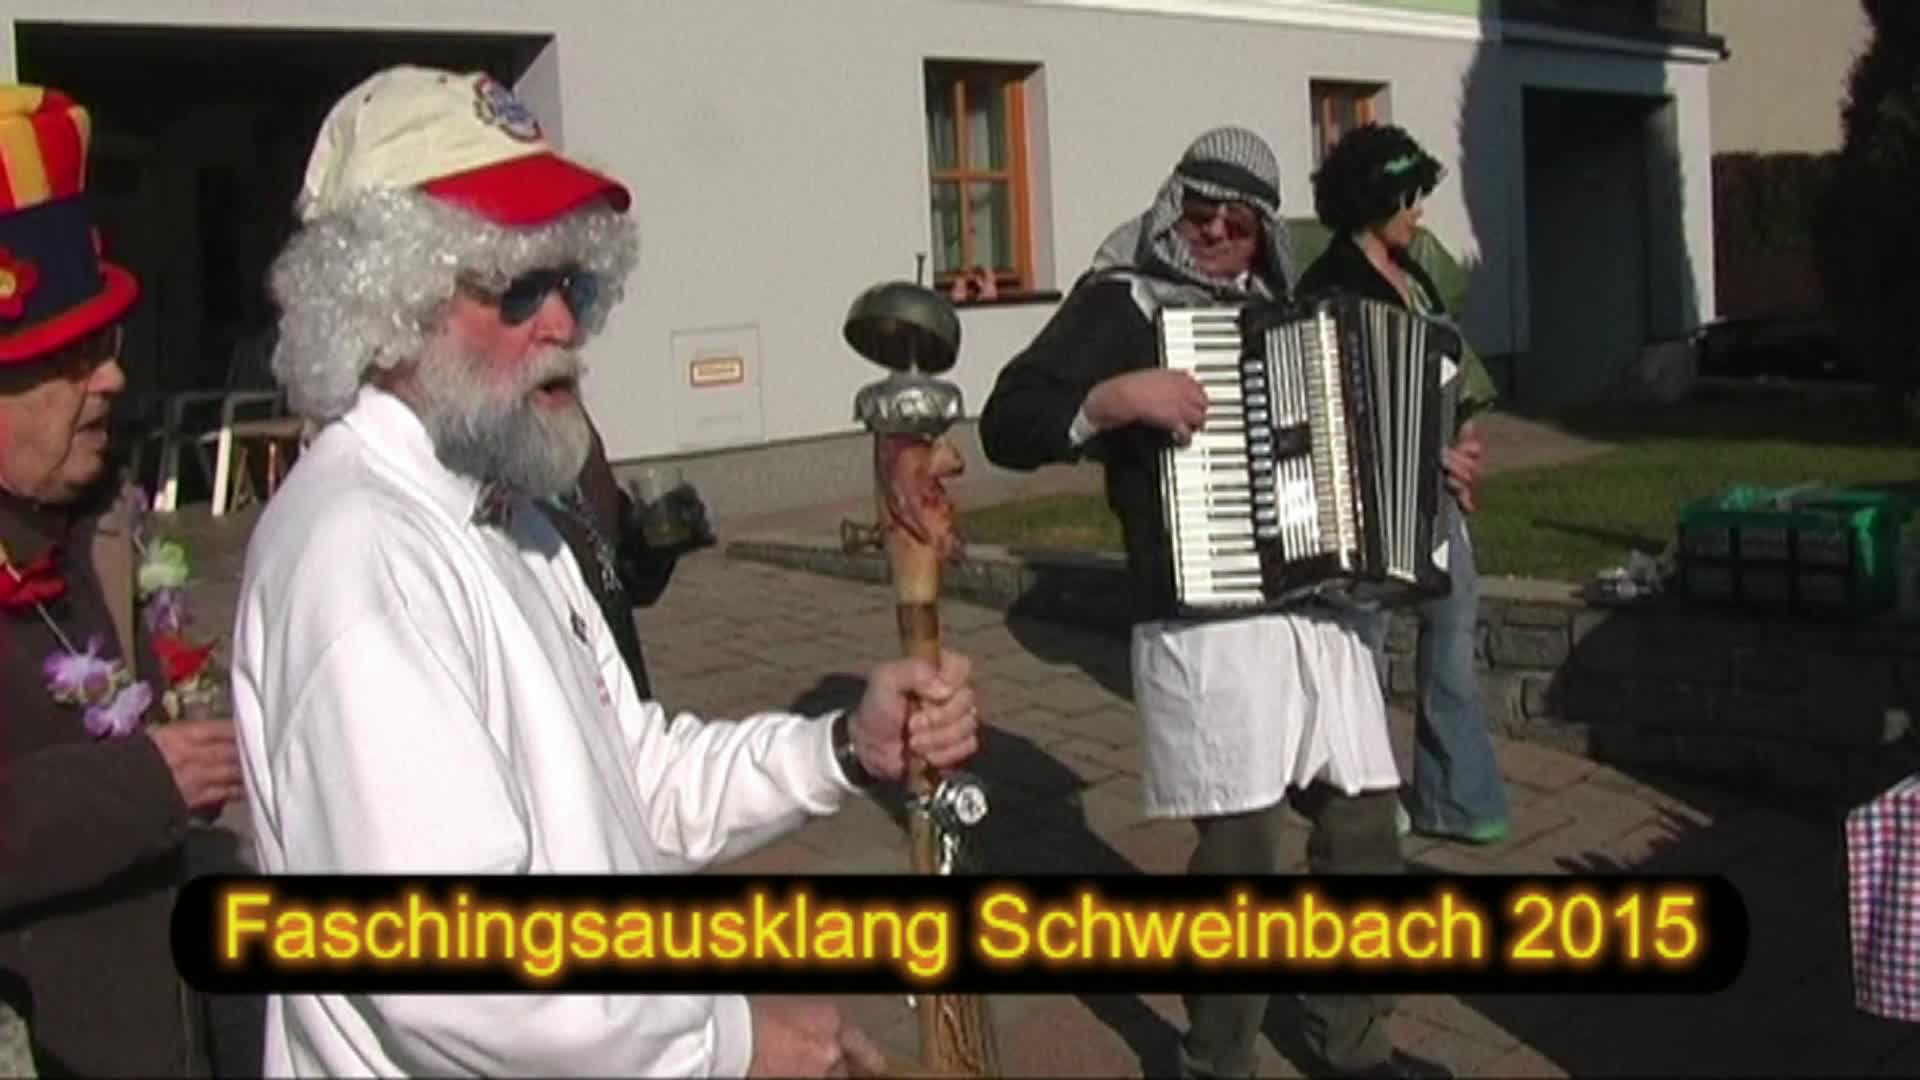 Faschingsausklang in Schweinbach 2015